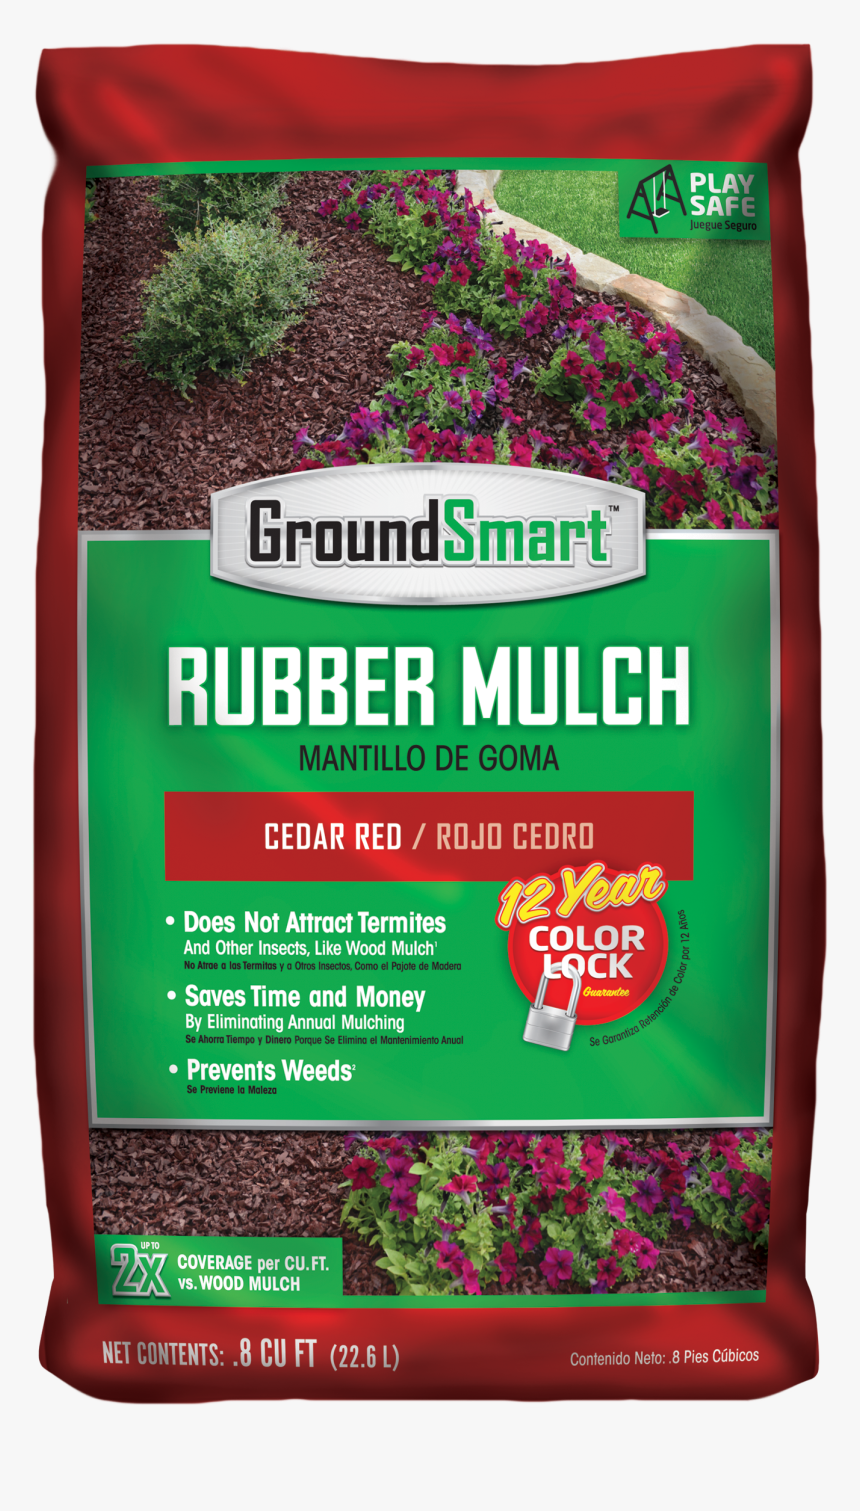 Groundsmart Rubber Mulch Cedar Red - Groundsmart Rubber Mulch, HD Png Download, Free Download